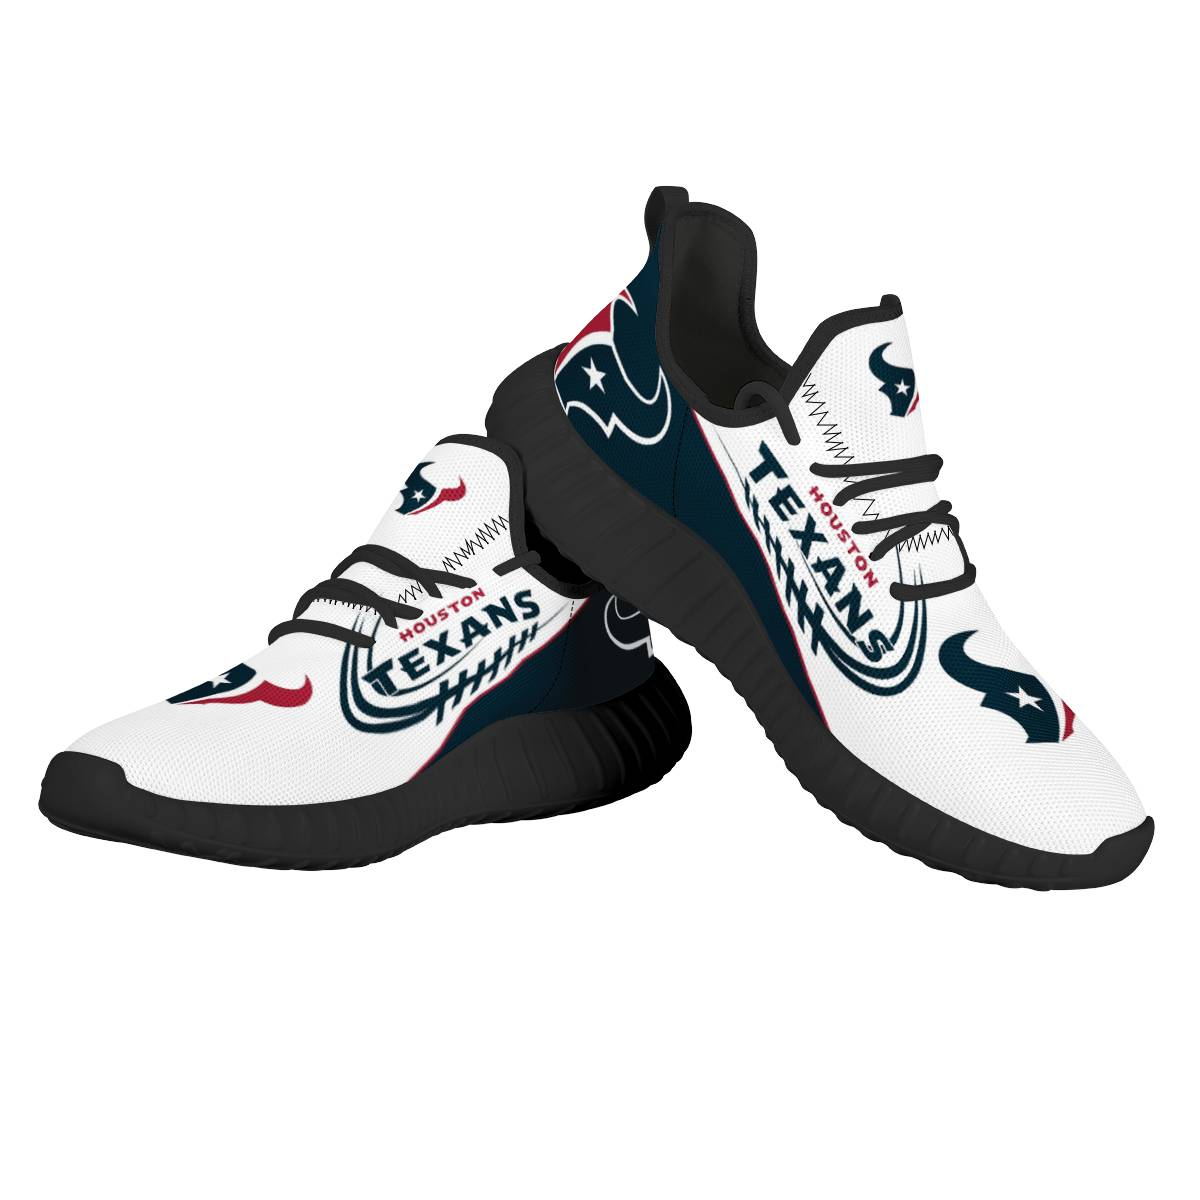 Men's NFL Houston Texans Mesh Knit Sneakers/Shoes 004